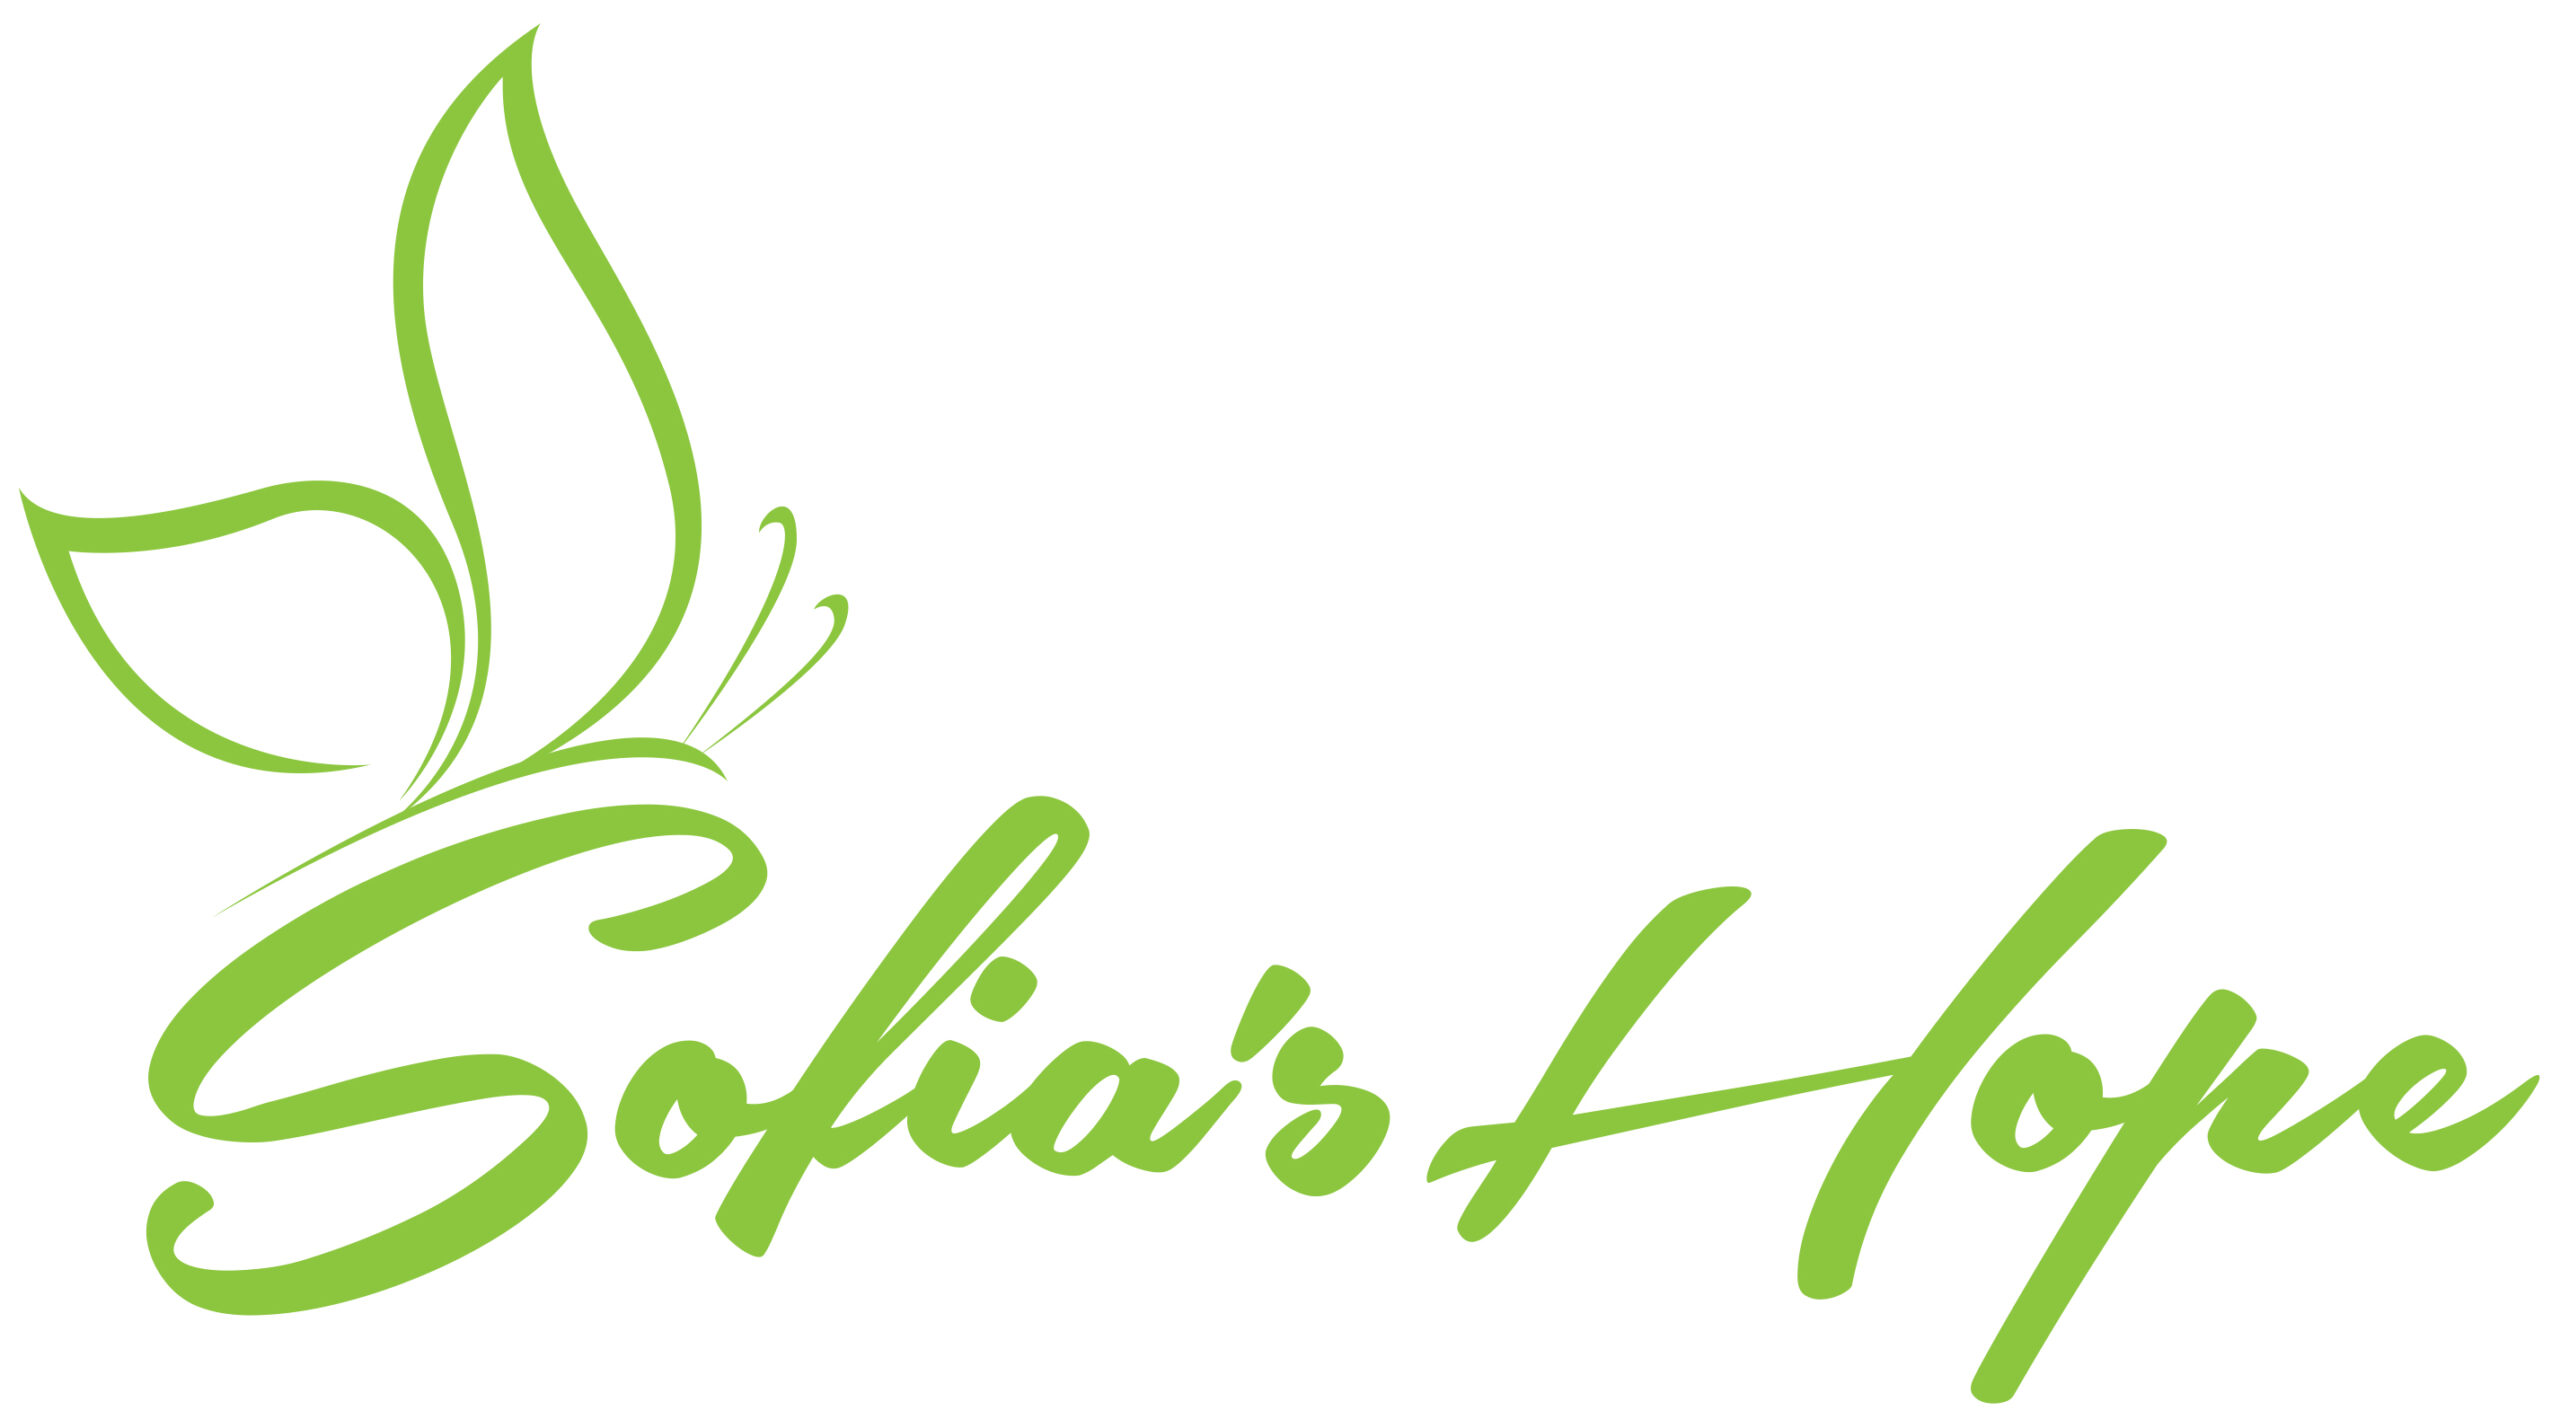 Green Sophia's Hope logo